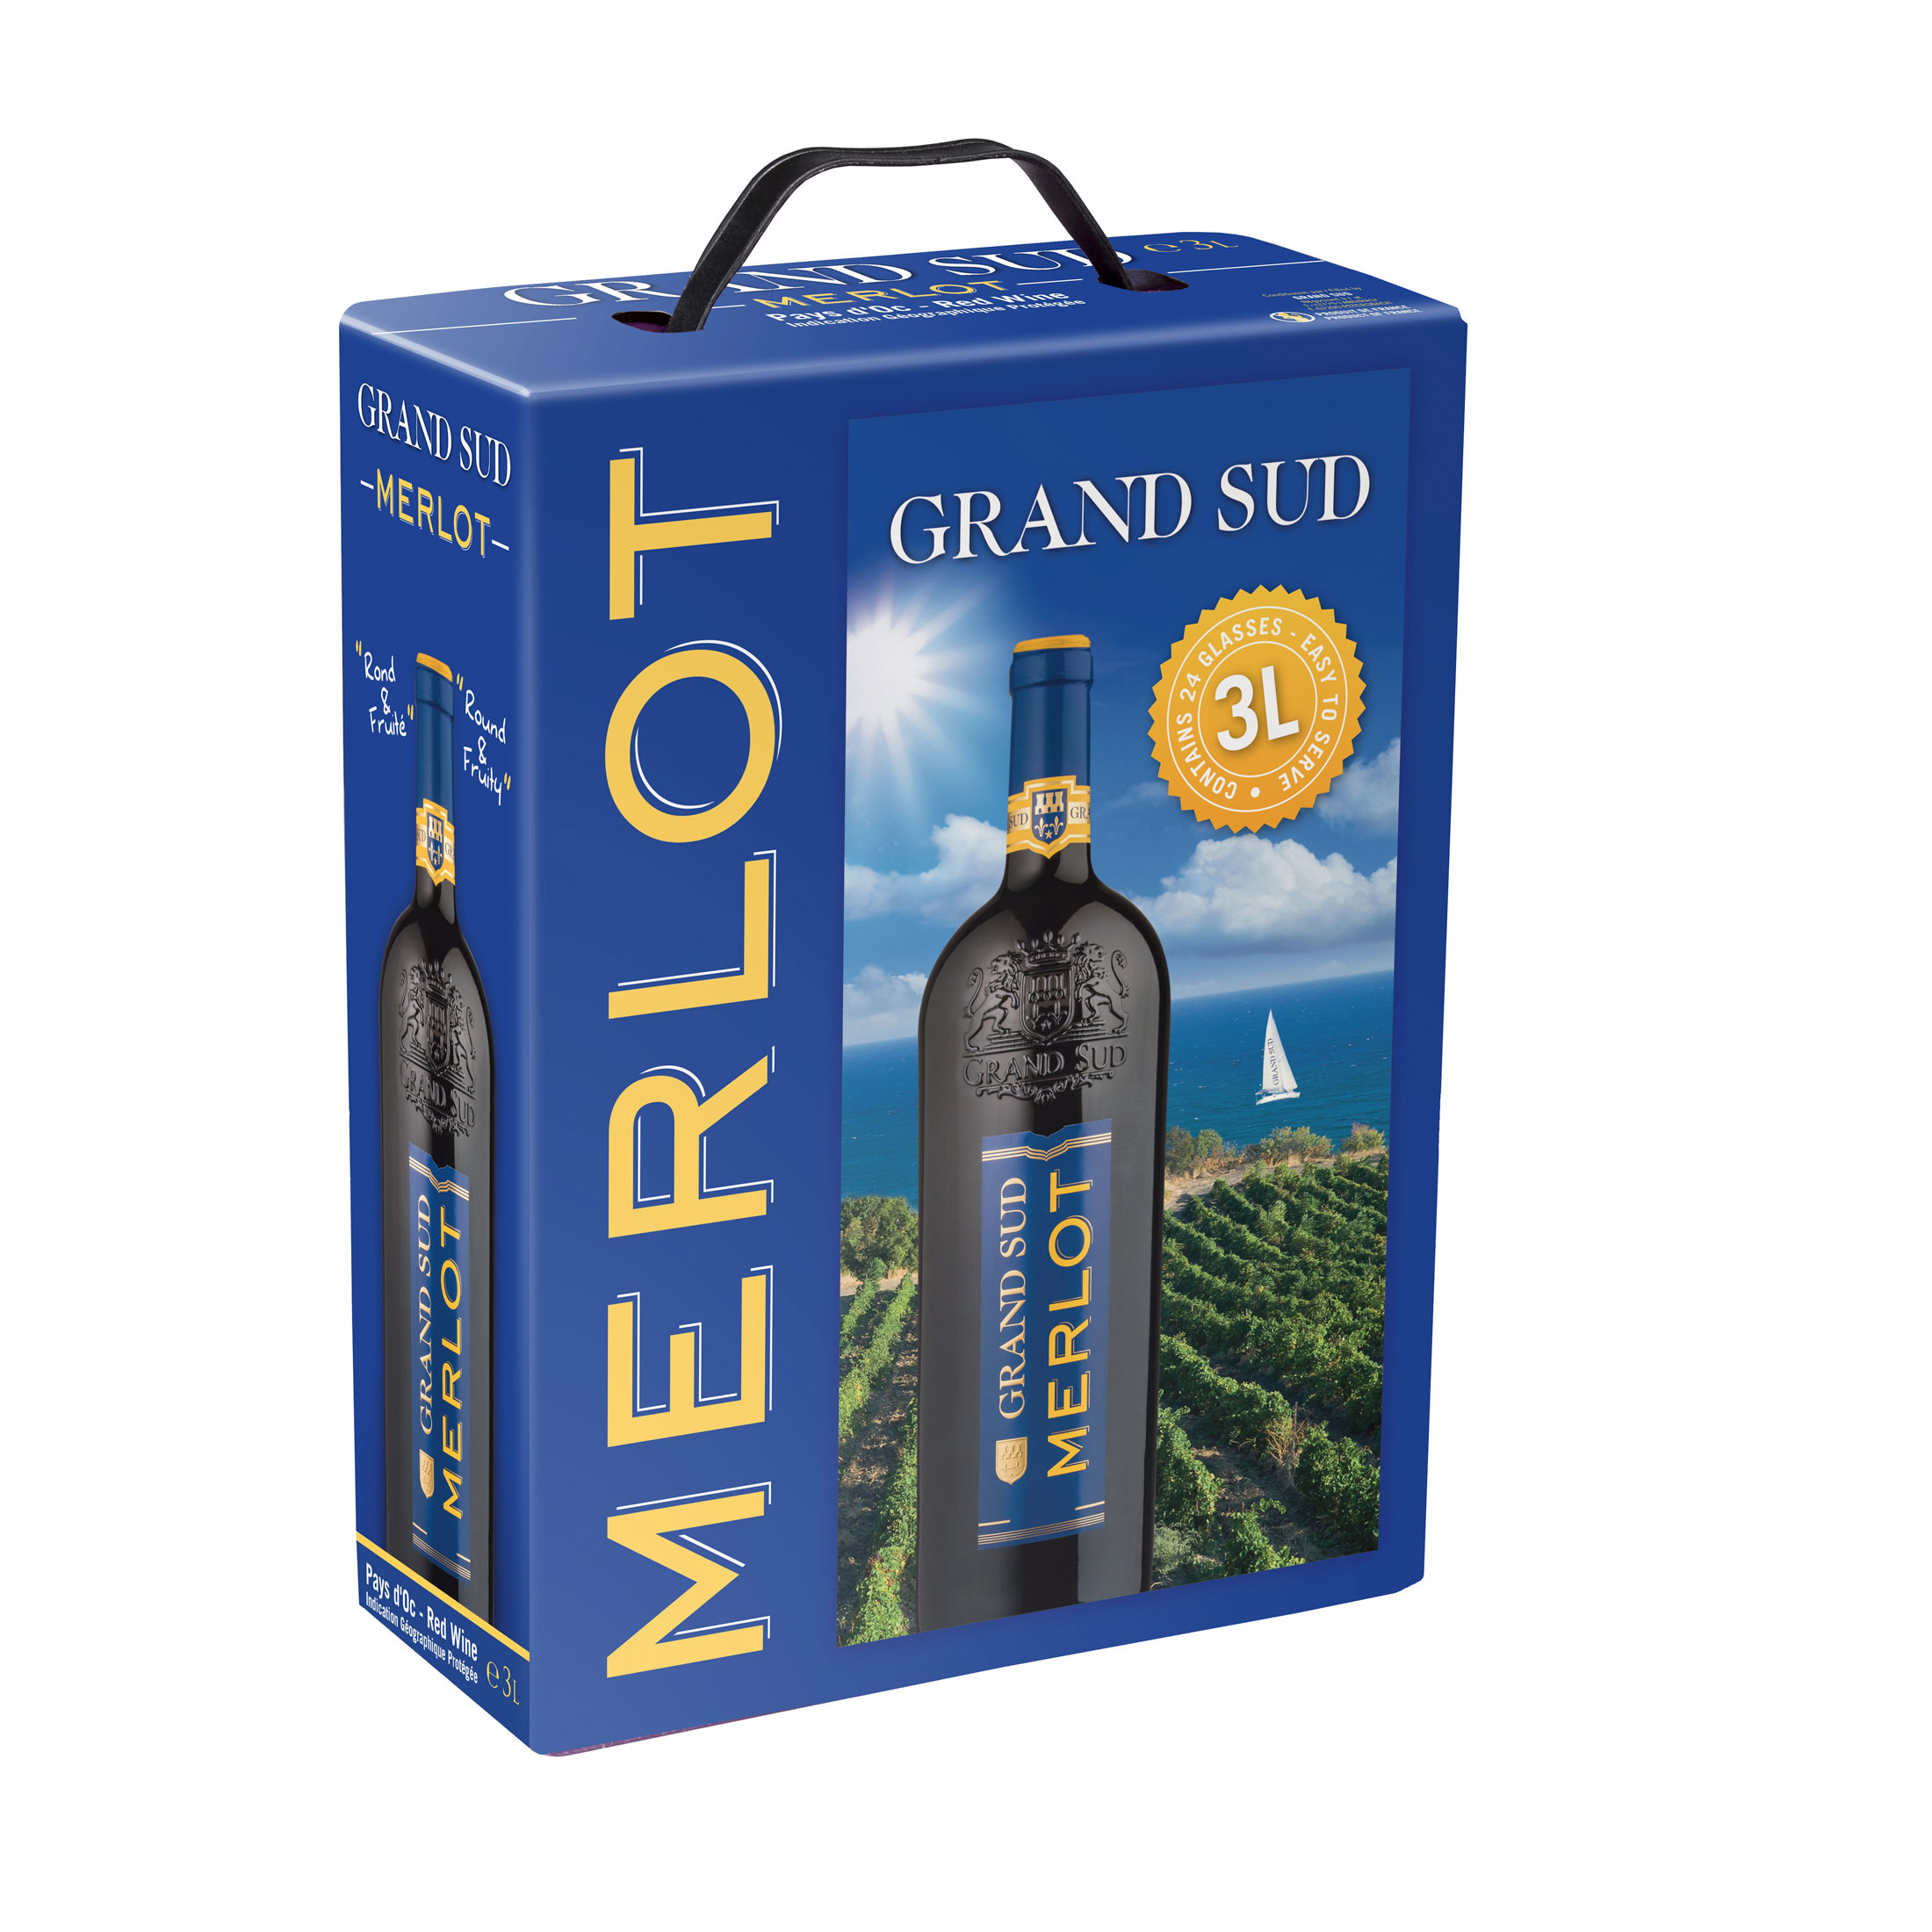 Bag In Box Merlot Pays D Oc Rotwein Grand Sud 3 L Feinste Weine Onlineshop